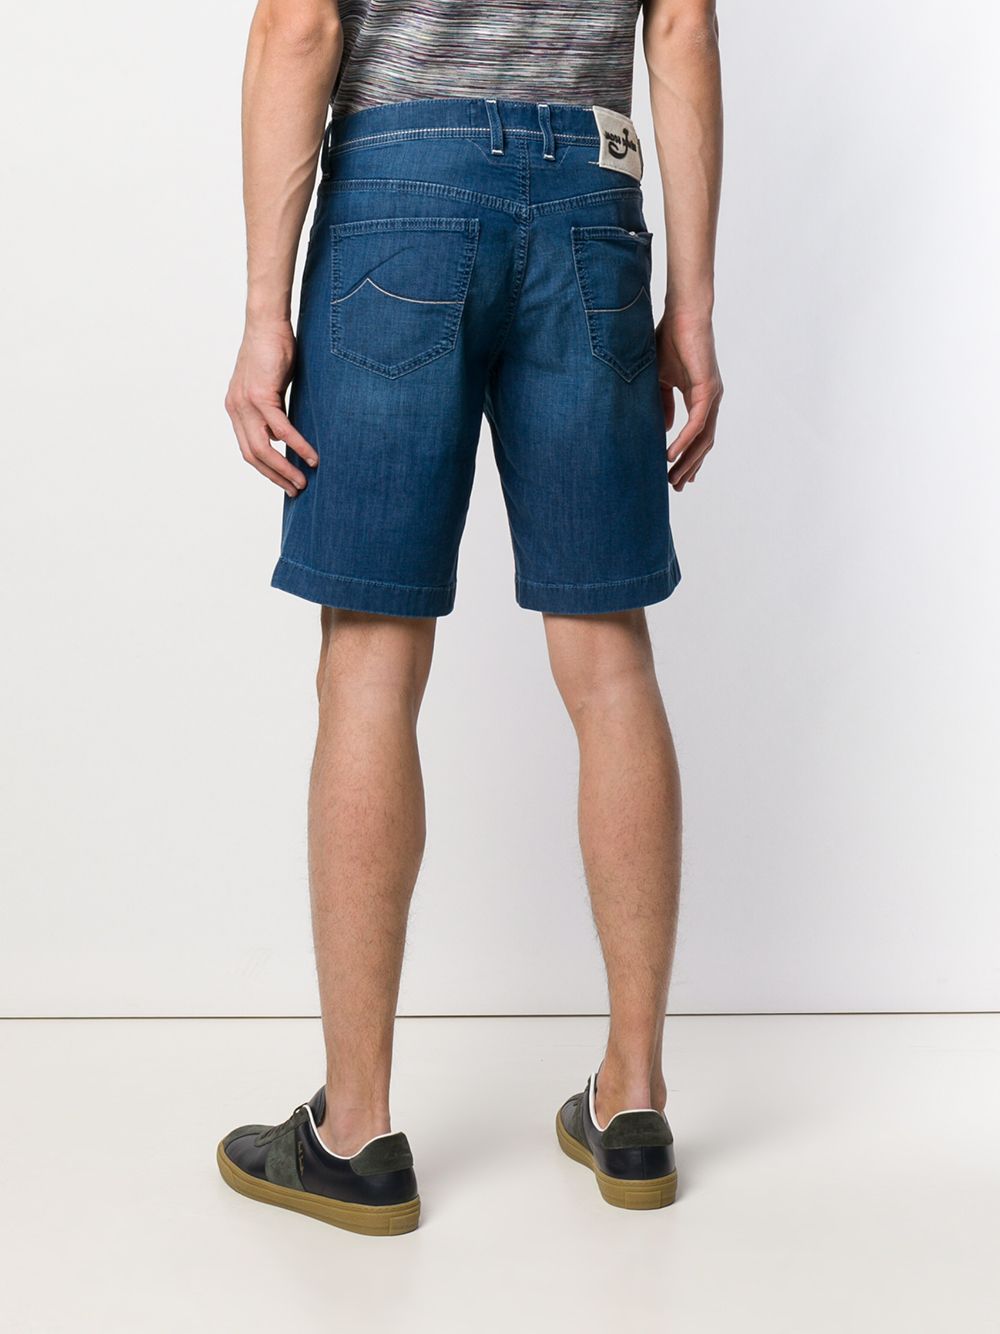 фото Jacob cohen джинсовые шорты строгого кроя